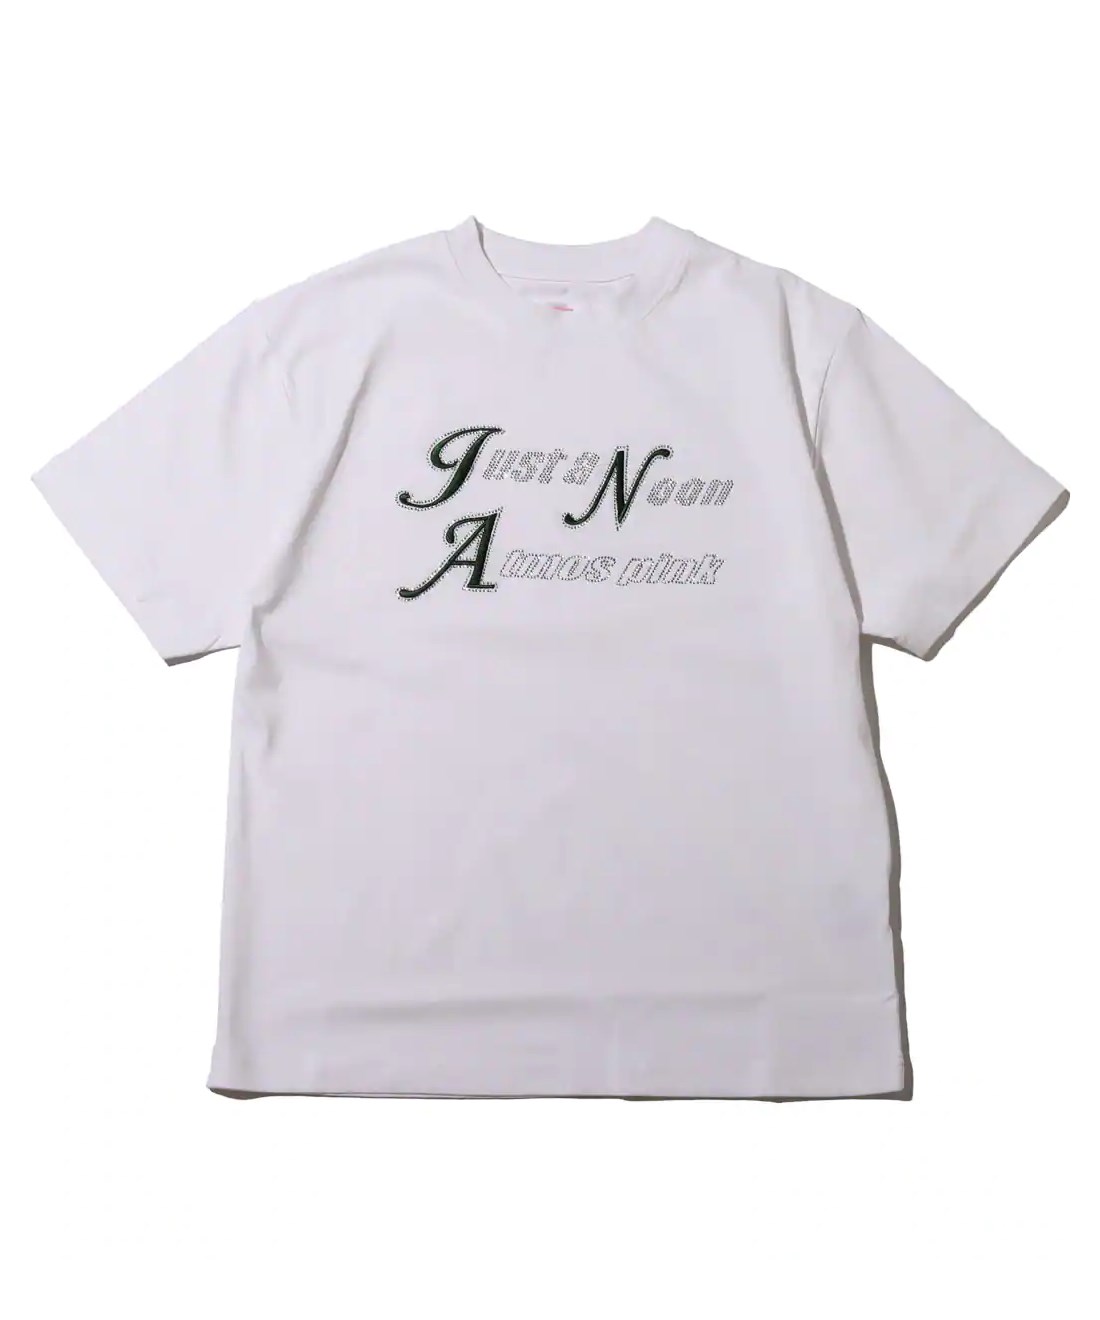 ジャストアヌーン × アトモスピンク ラインストーンロゴTシャツ